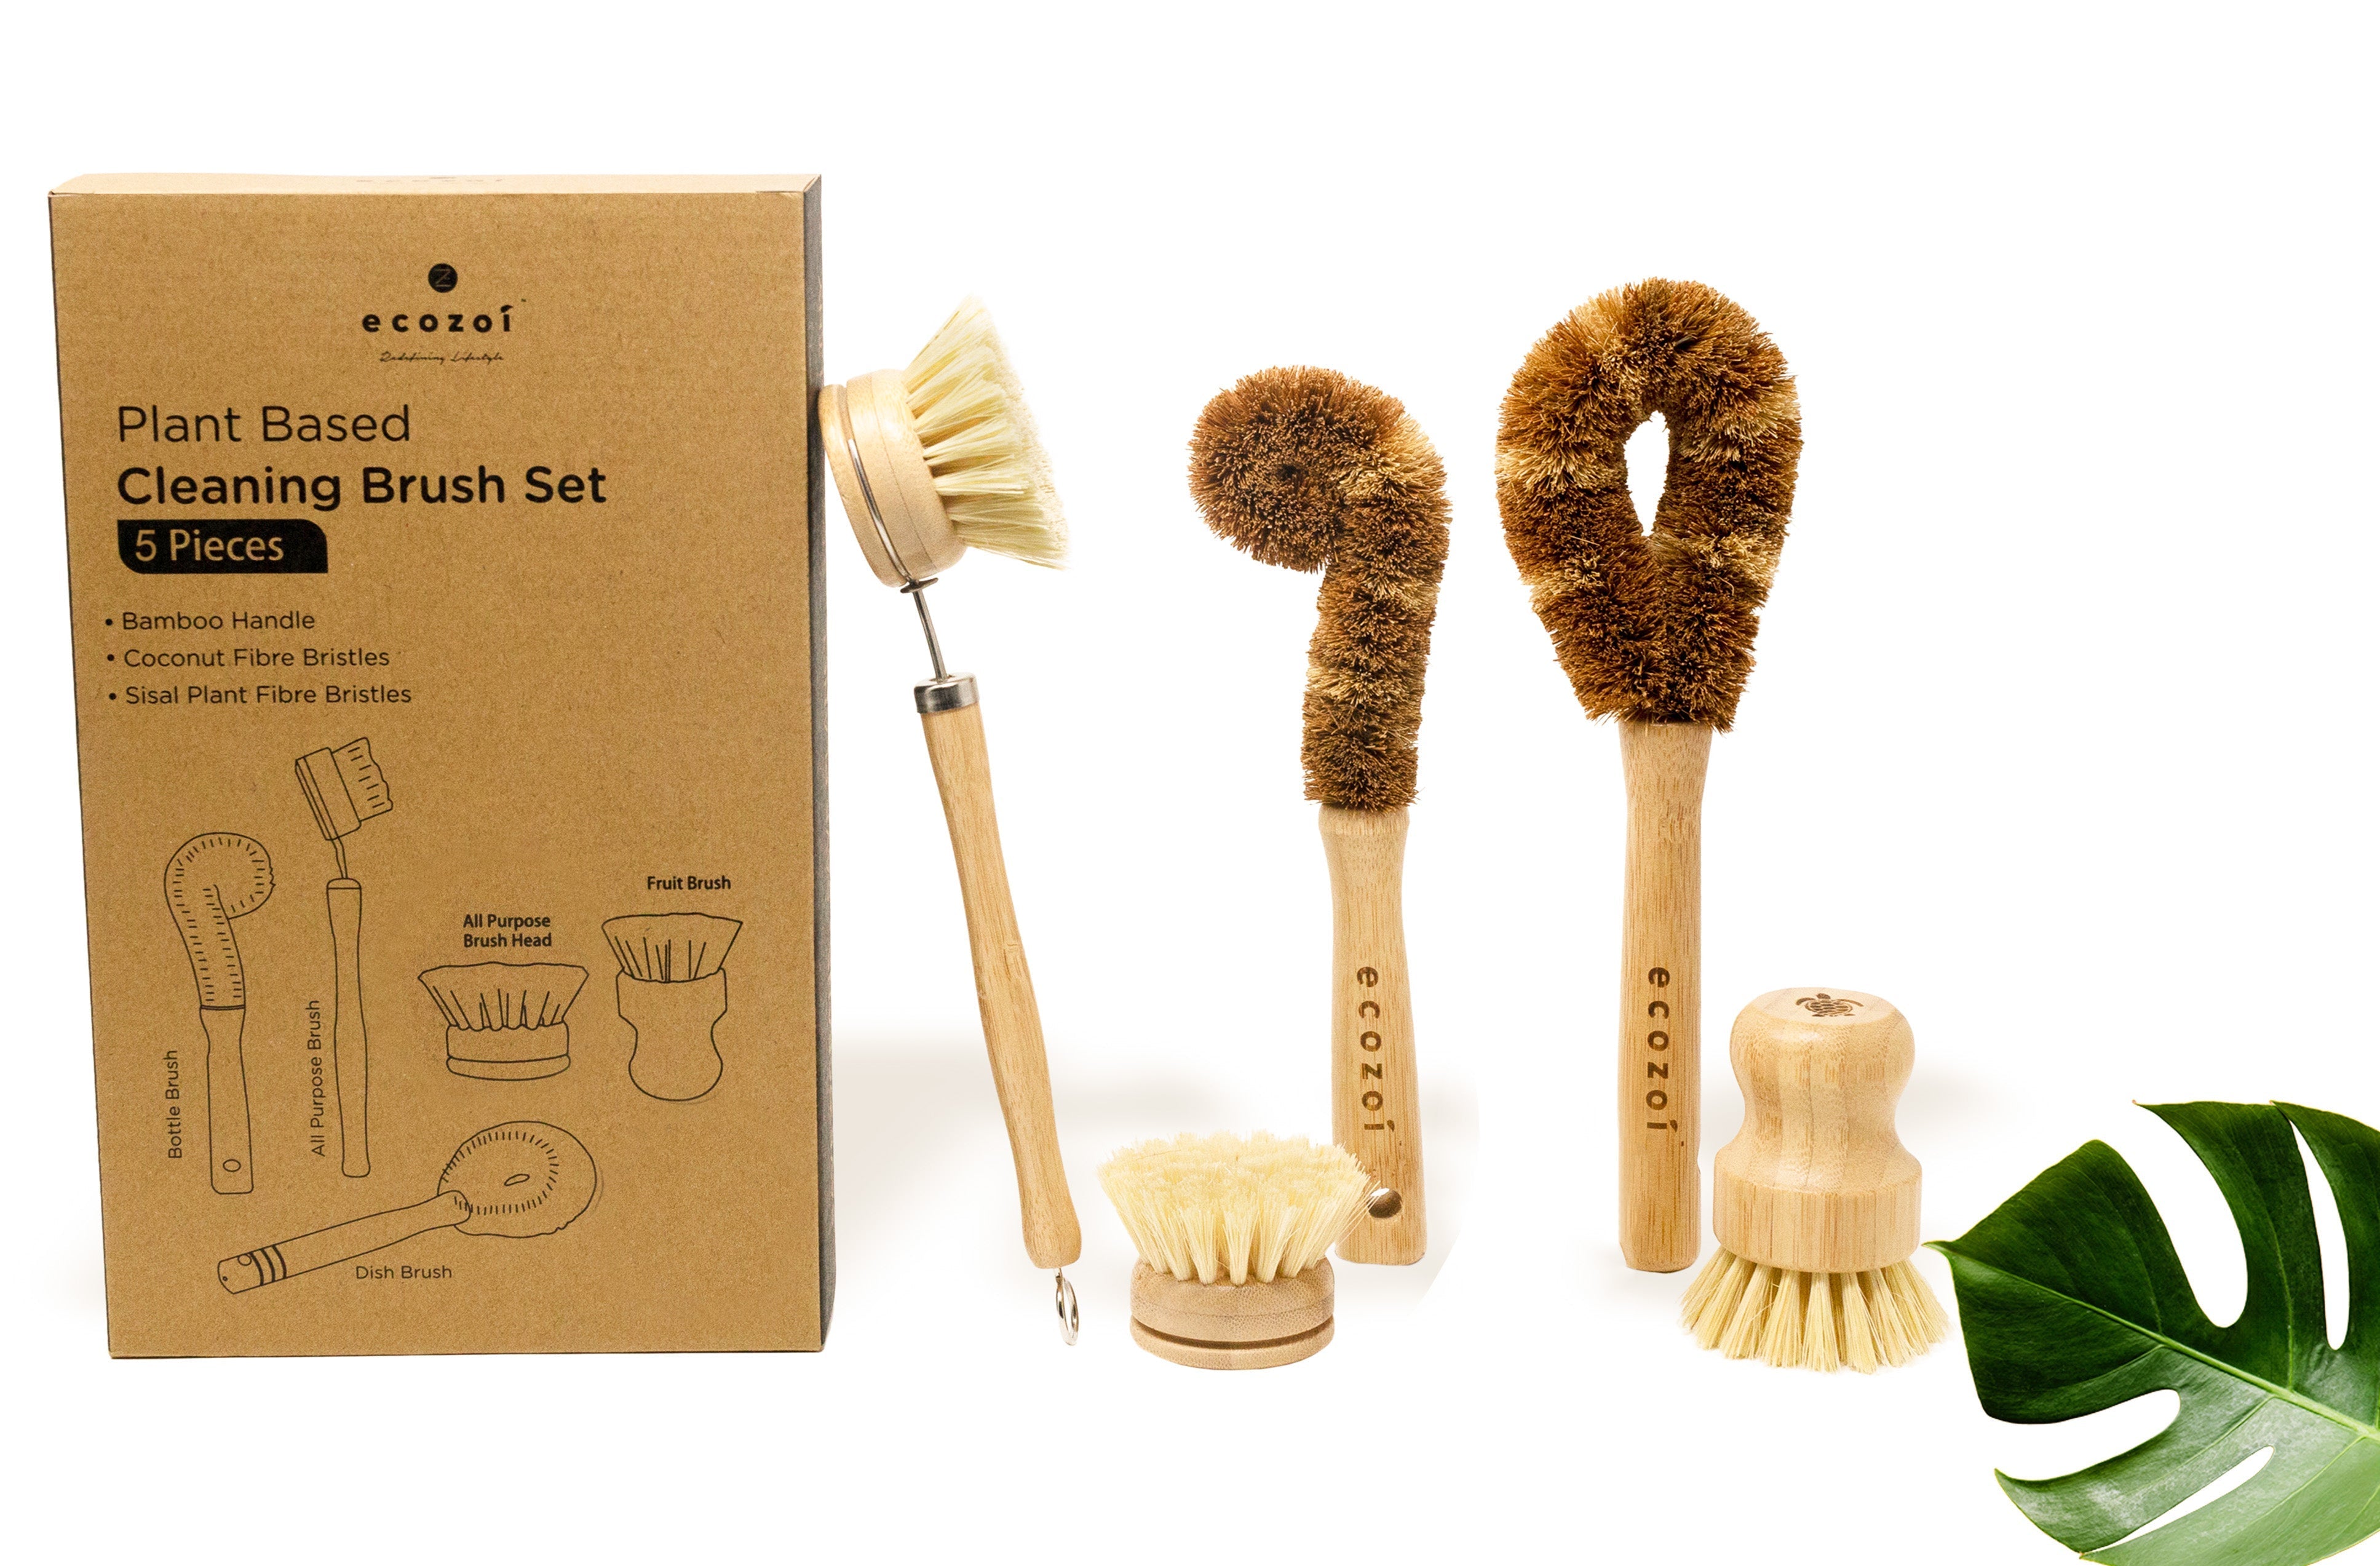 Plant Based Cleaning Brush Set, 5 Piece for Vegetable, and Kitchen Dish Cleaning Cleaning Brush Set ecozoi 